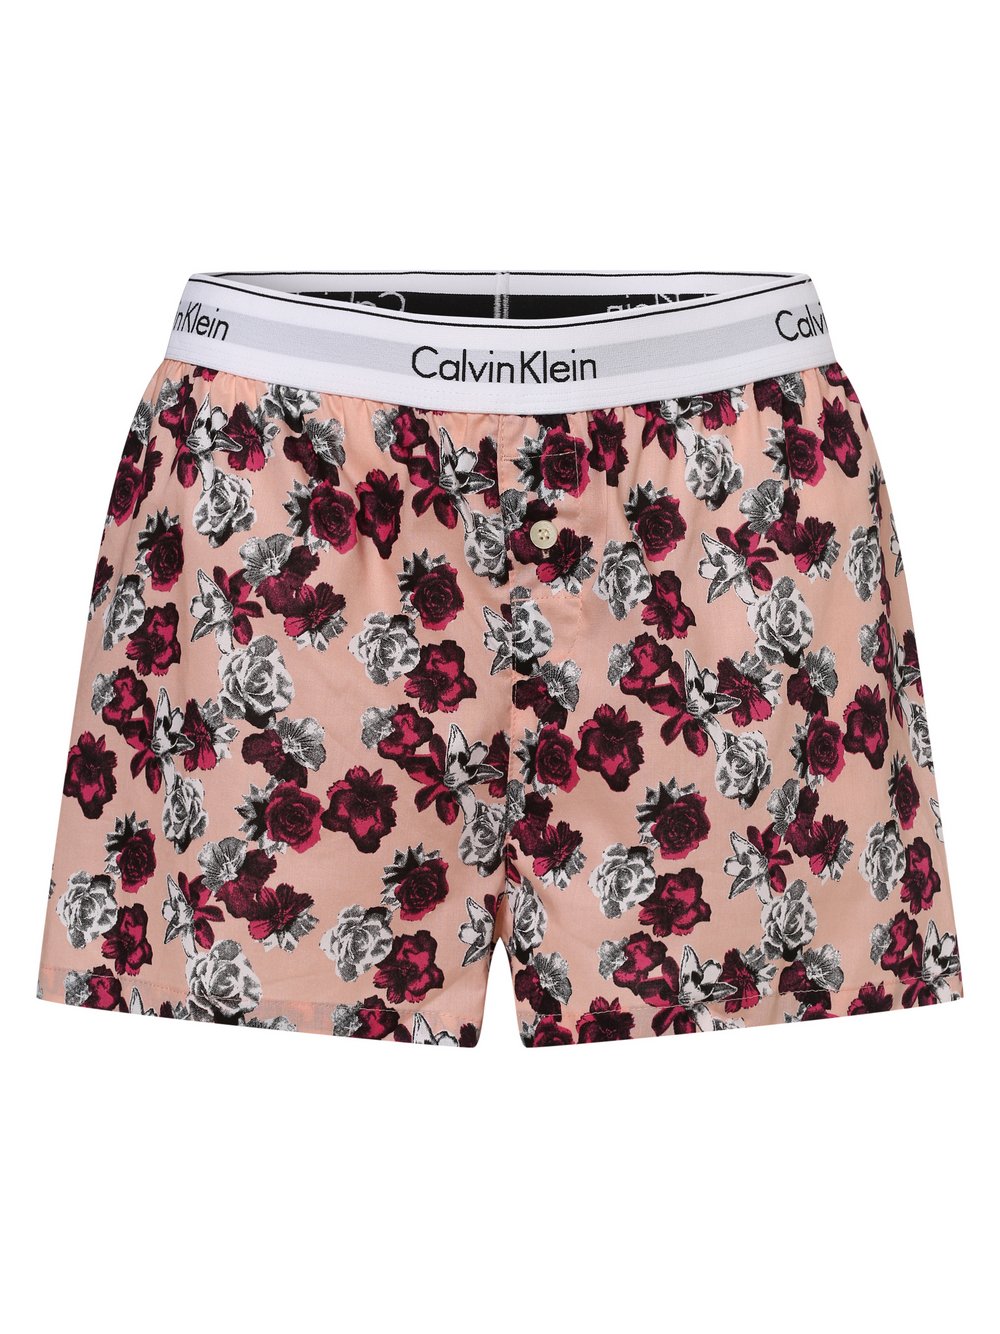 Calvin Klein - Damskie spodenki od piżam, różowy|wielokolorowy